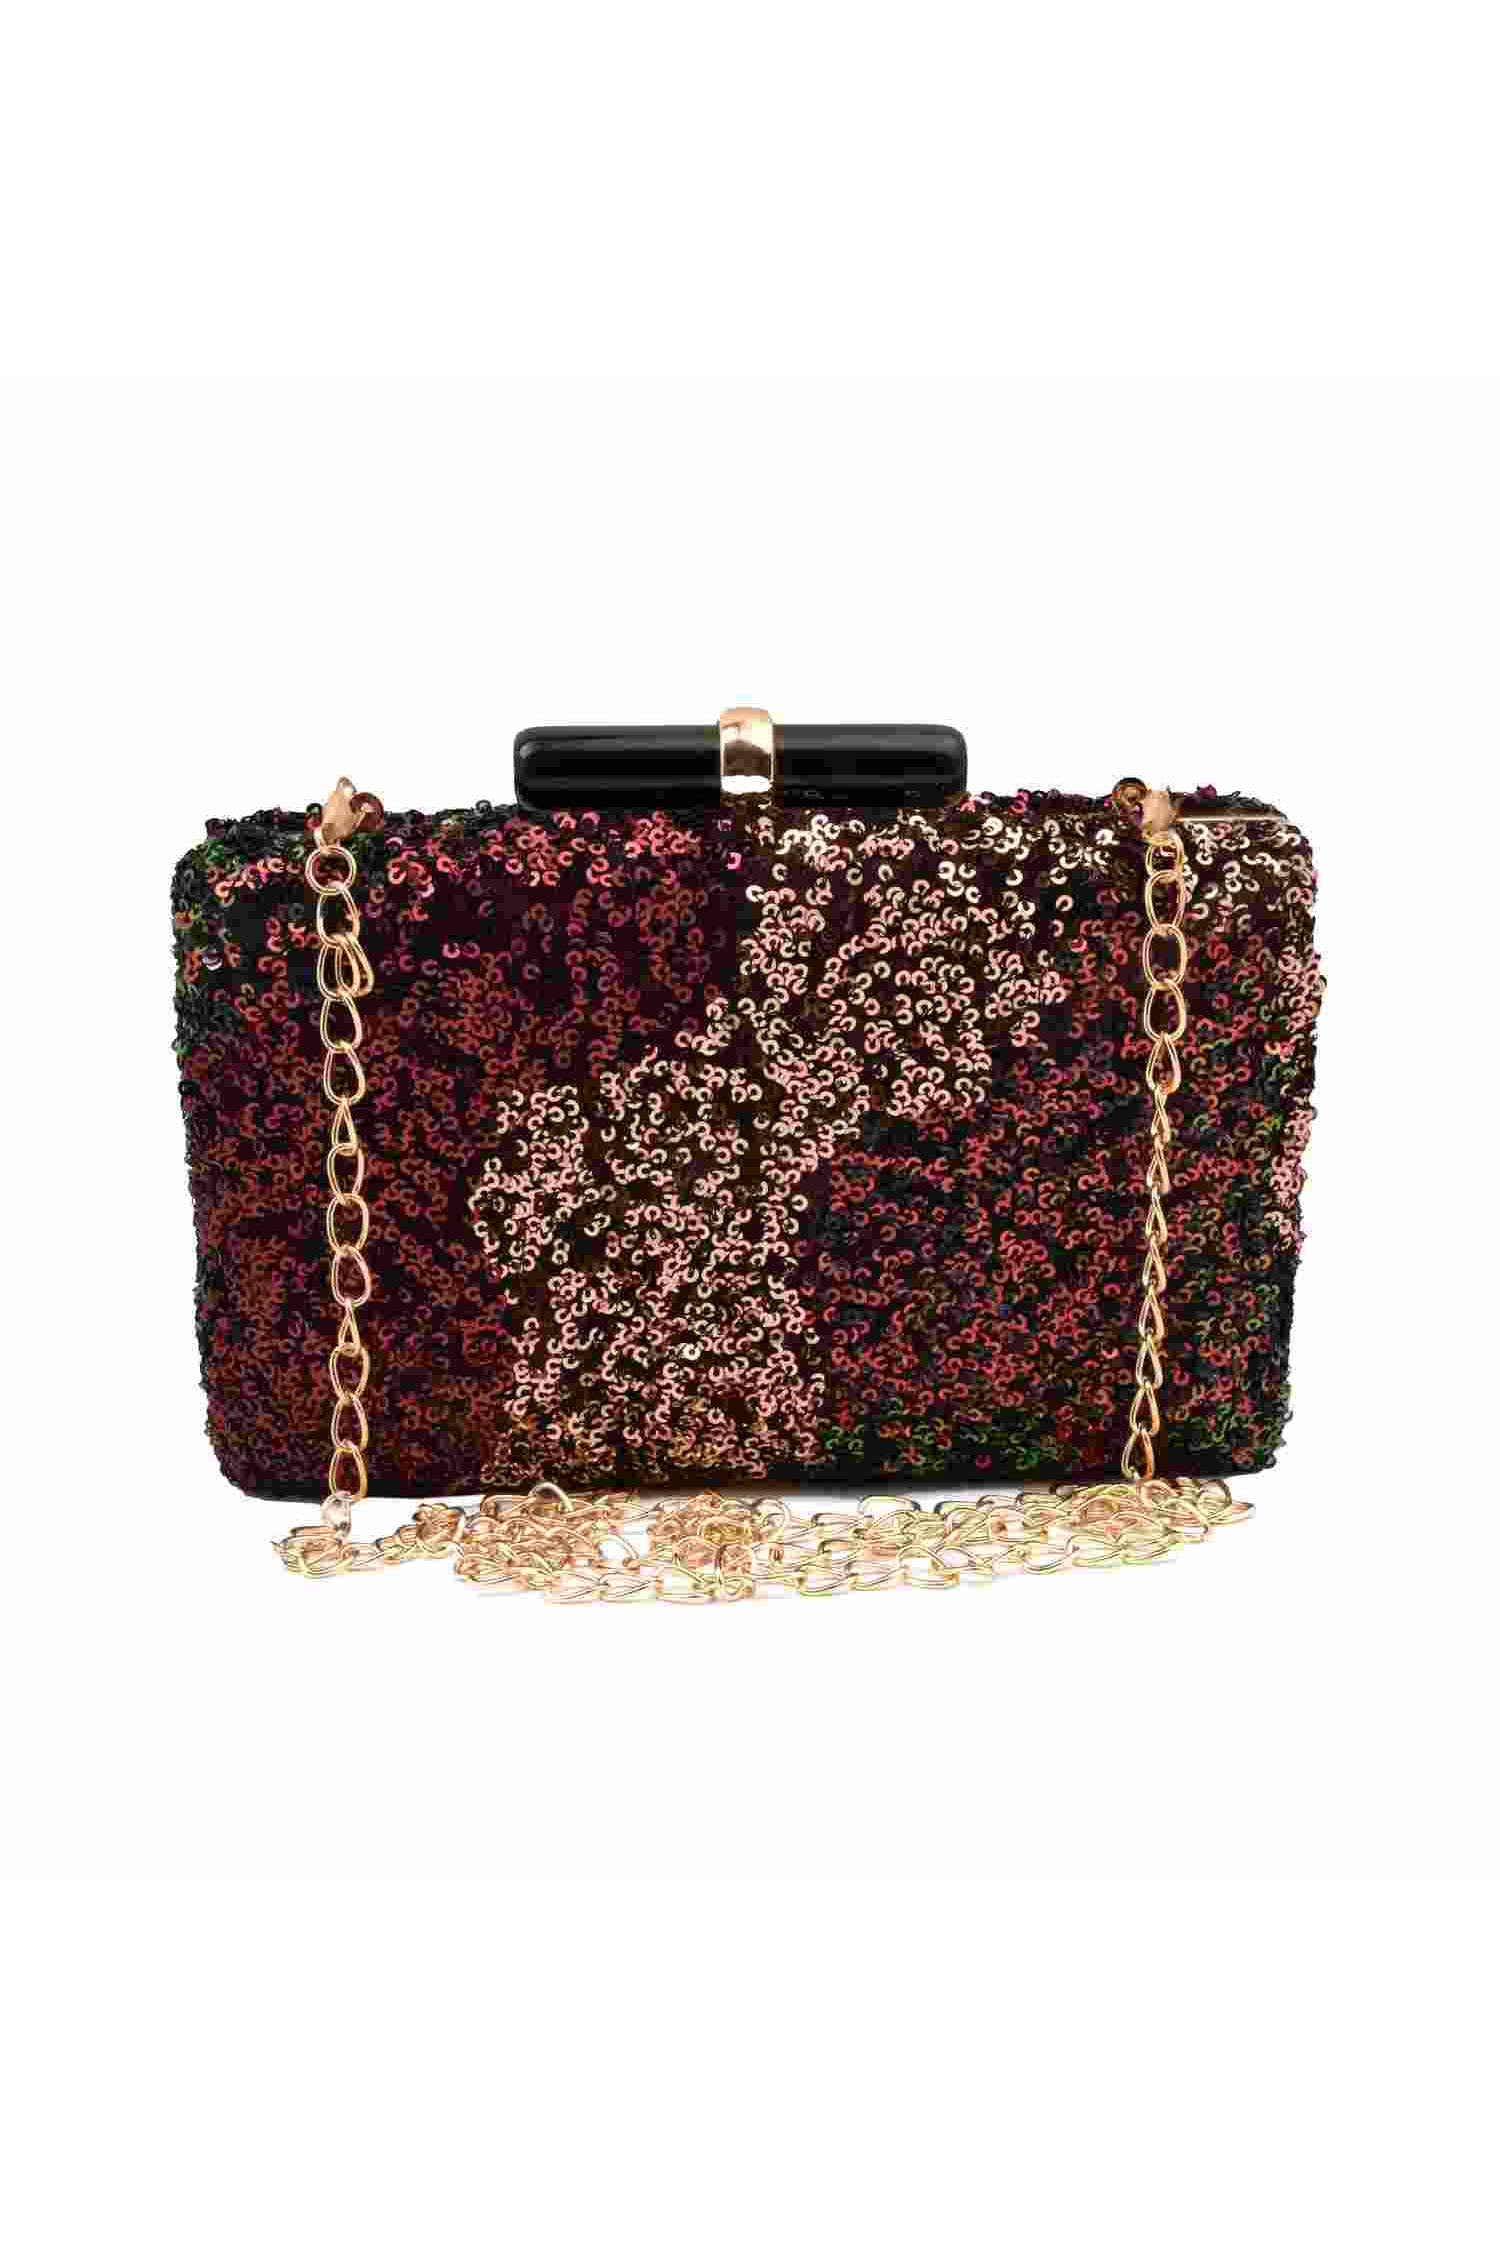 Victoria's Secret Evening Clutch Handbags | Mercari